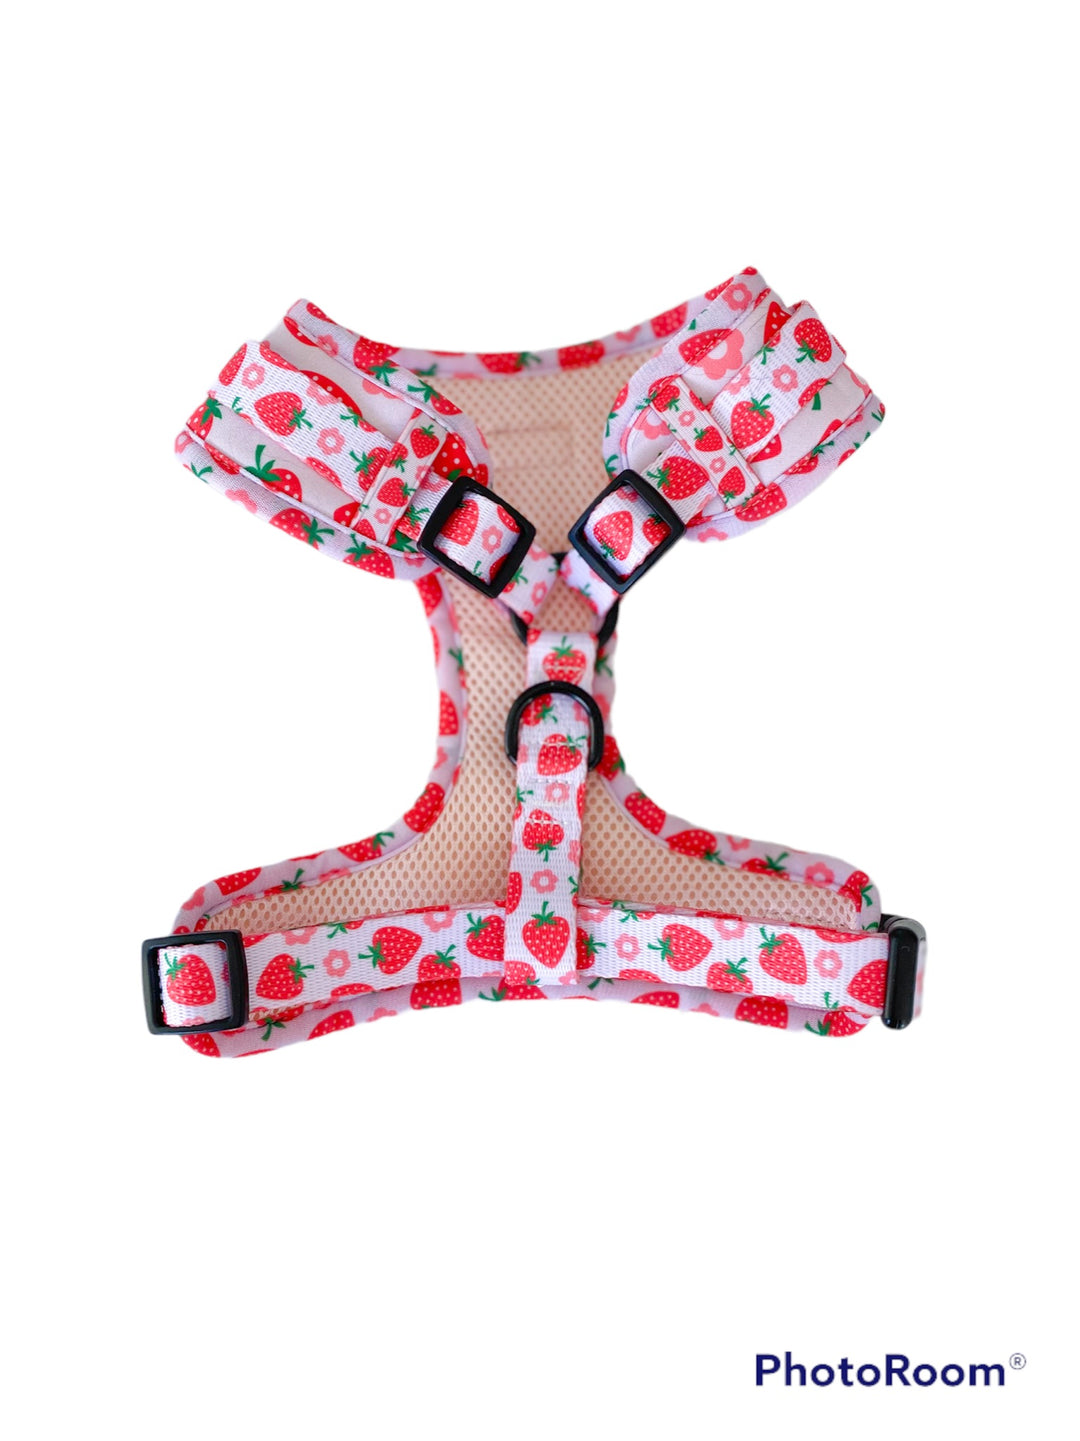 Bundle - Strawberry Shortcake Matching Harness and Leash Set